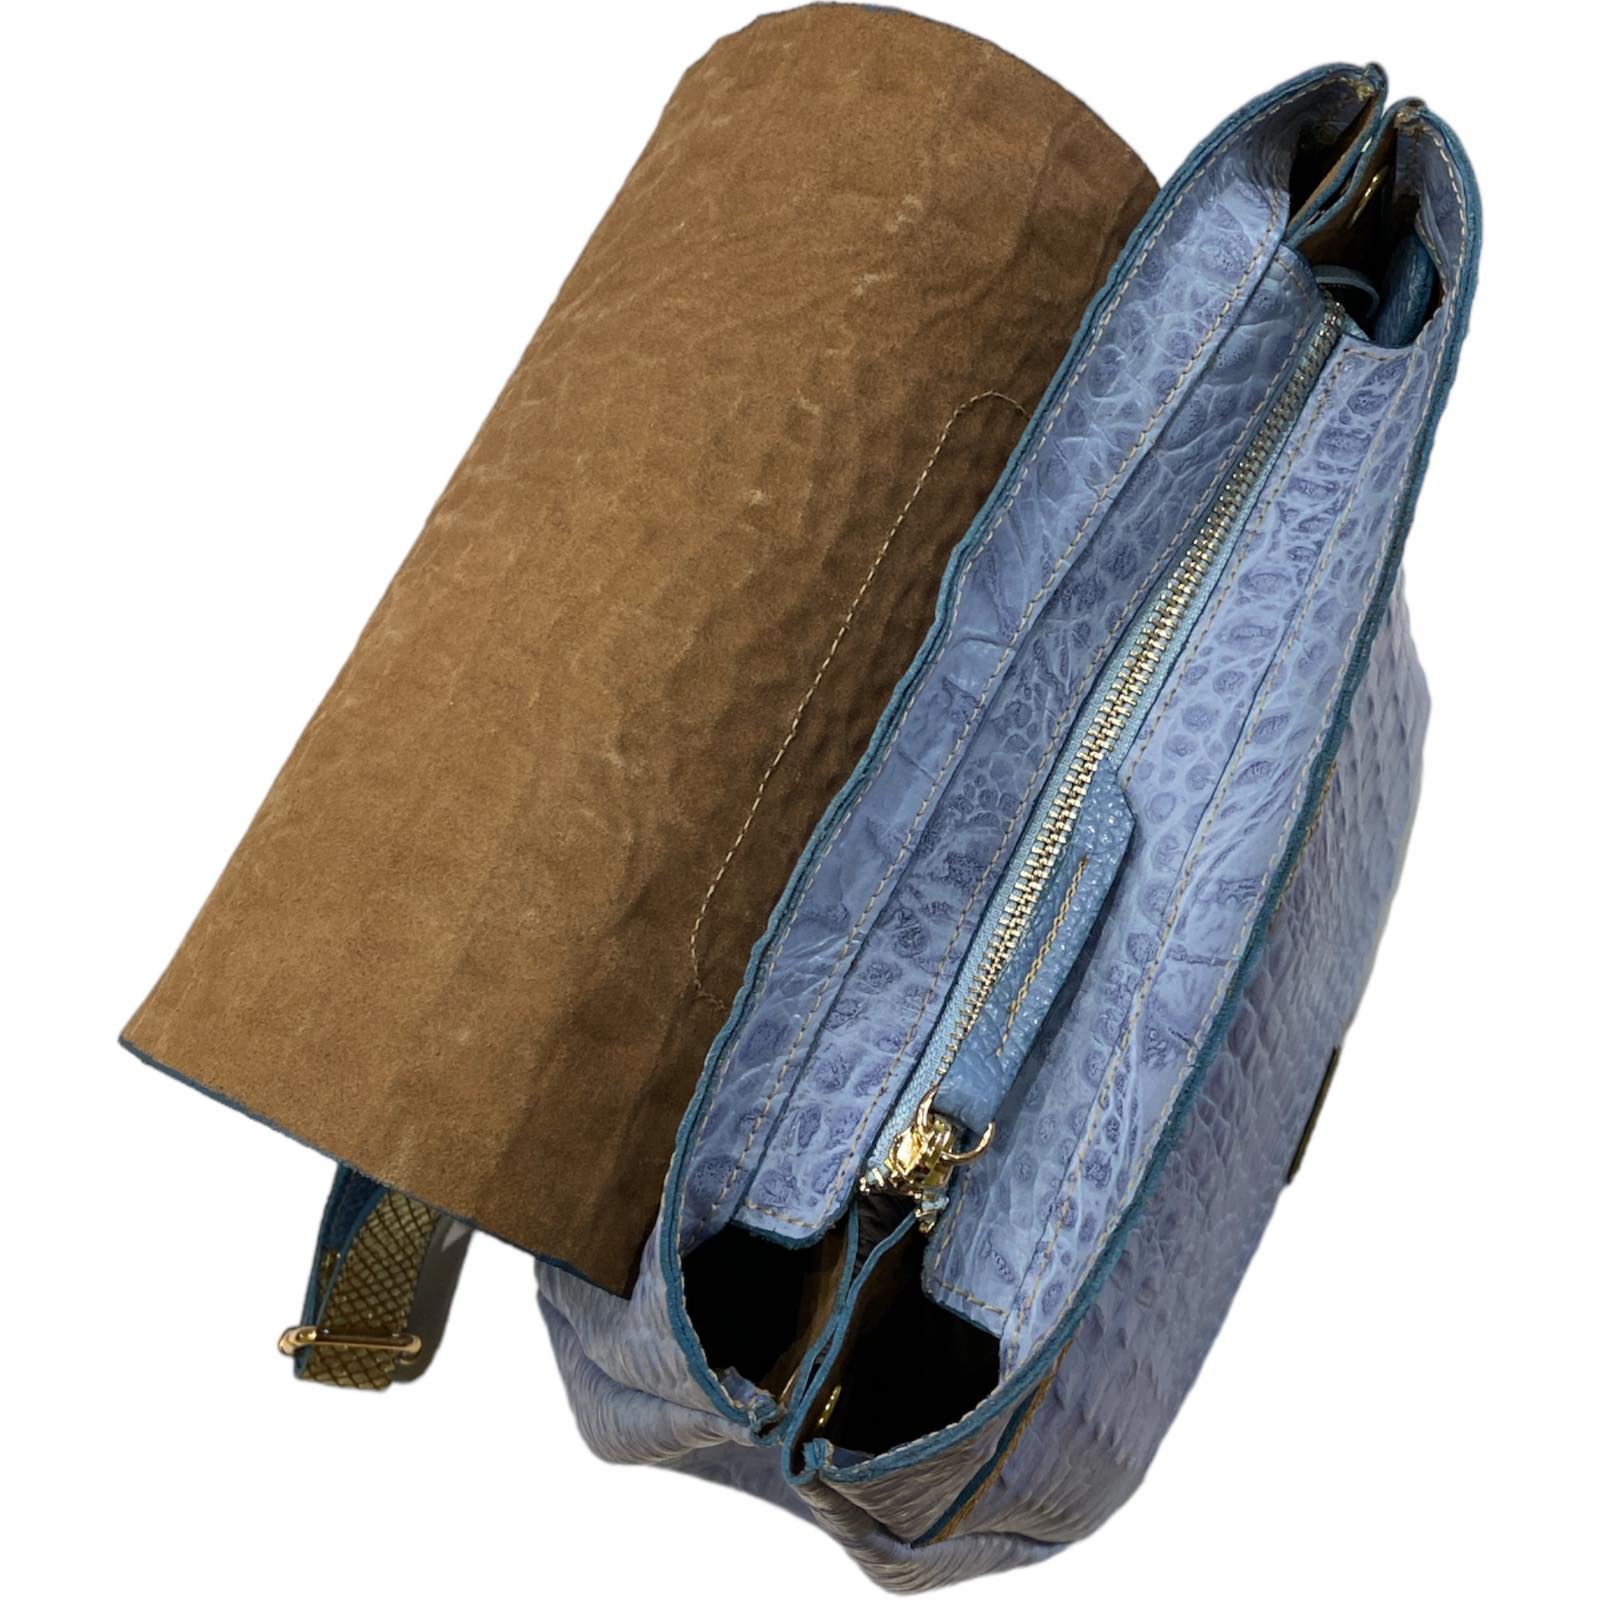 Keira. Raf blue alligator-print leather backpack